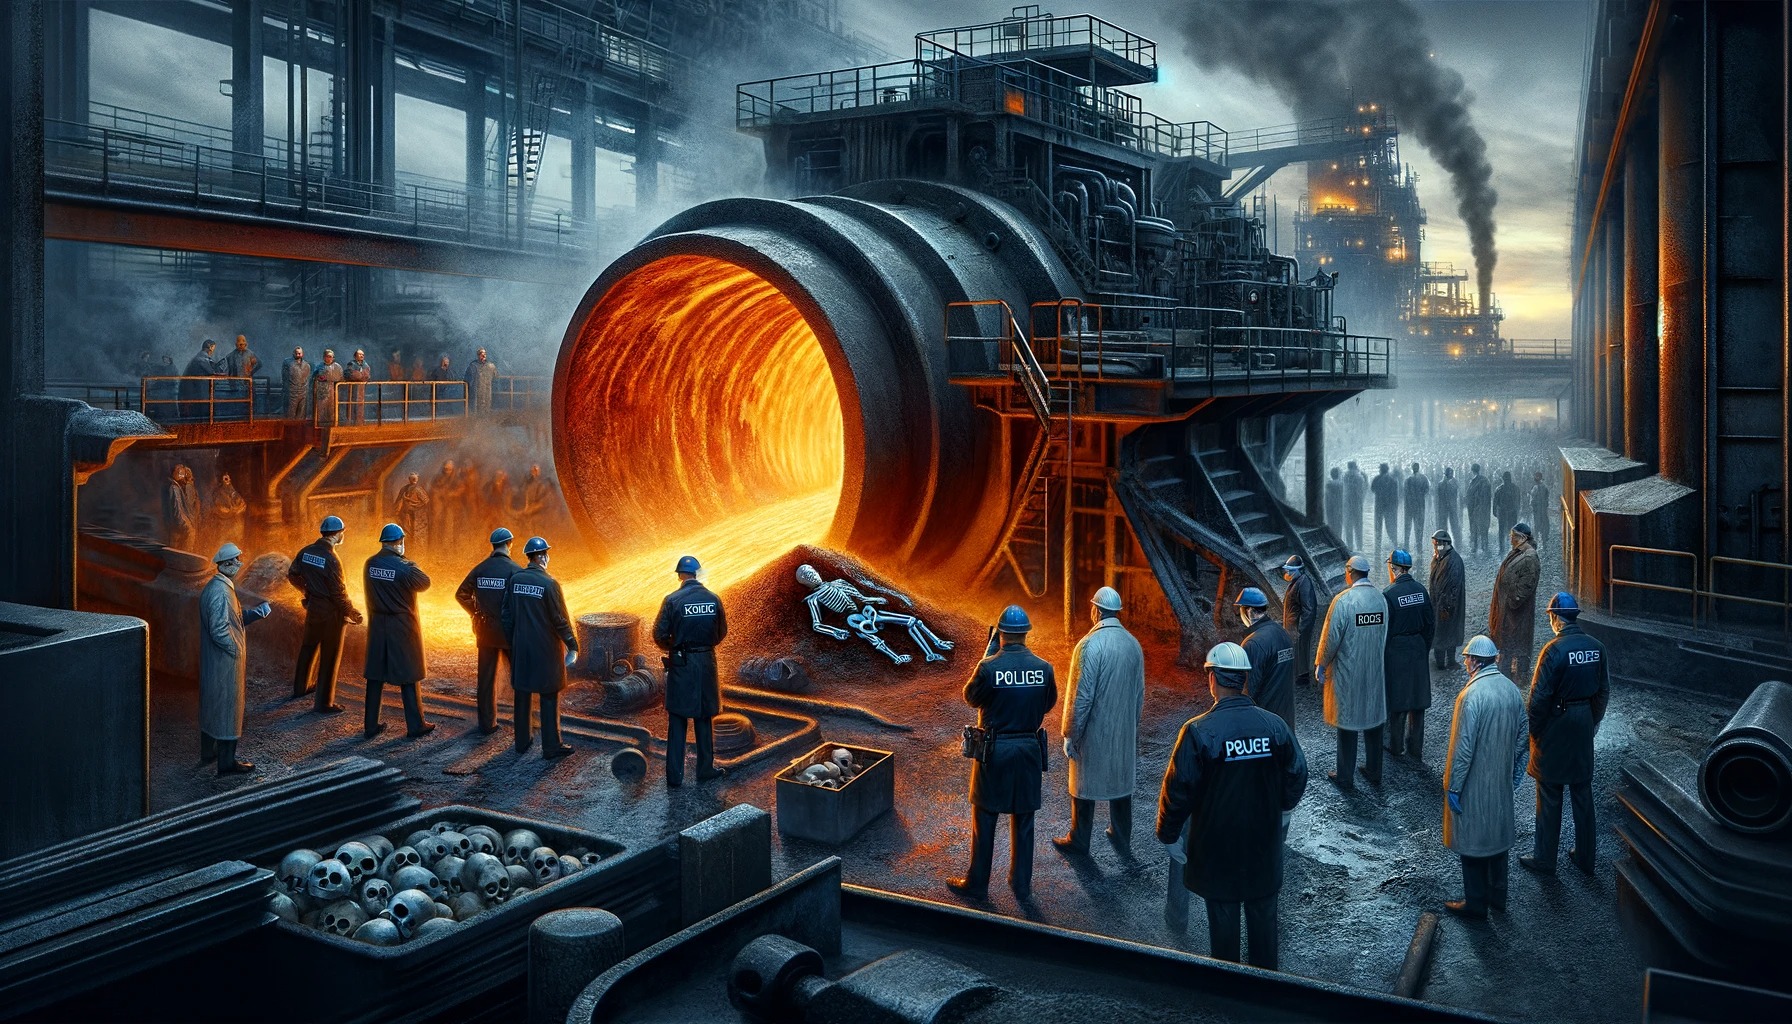 製鉄所で30歳男性作業員が行方不明→鉄を溶かす大鍋(温度1,000℃以上)の中から人骨発見